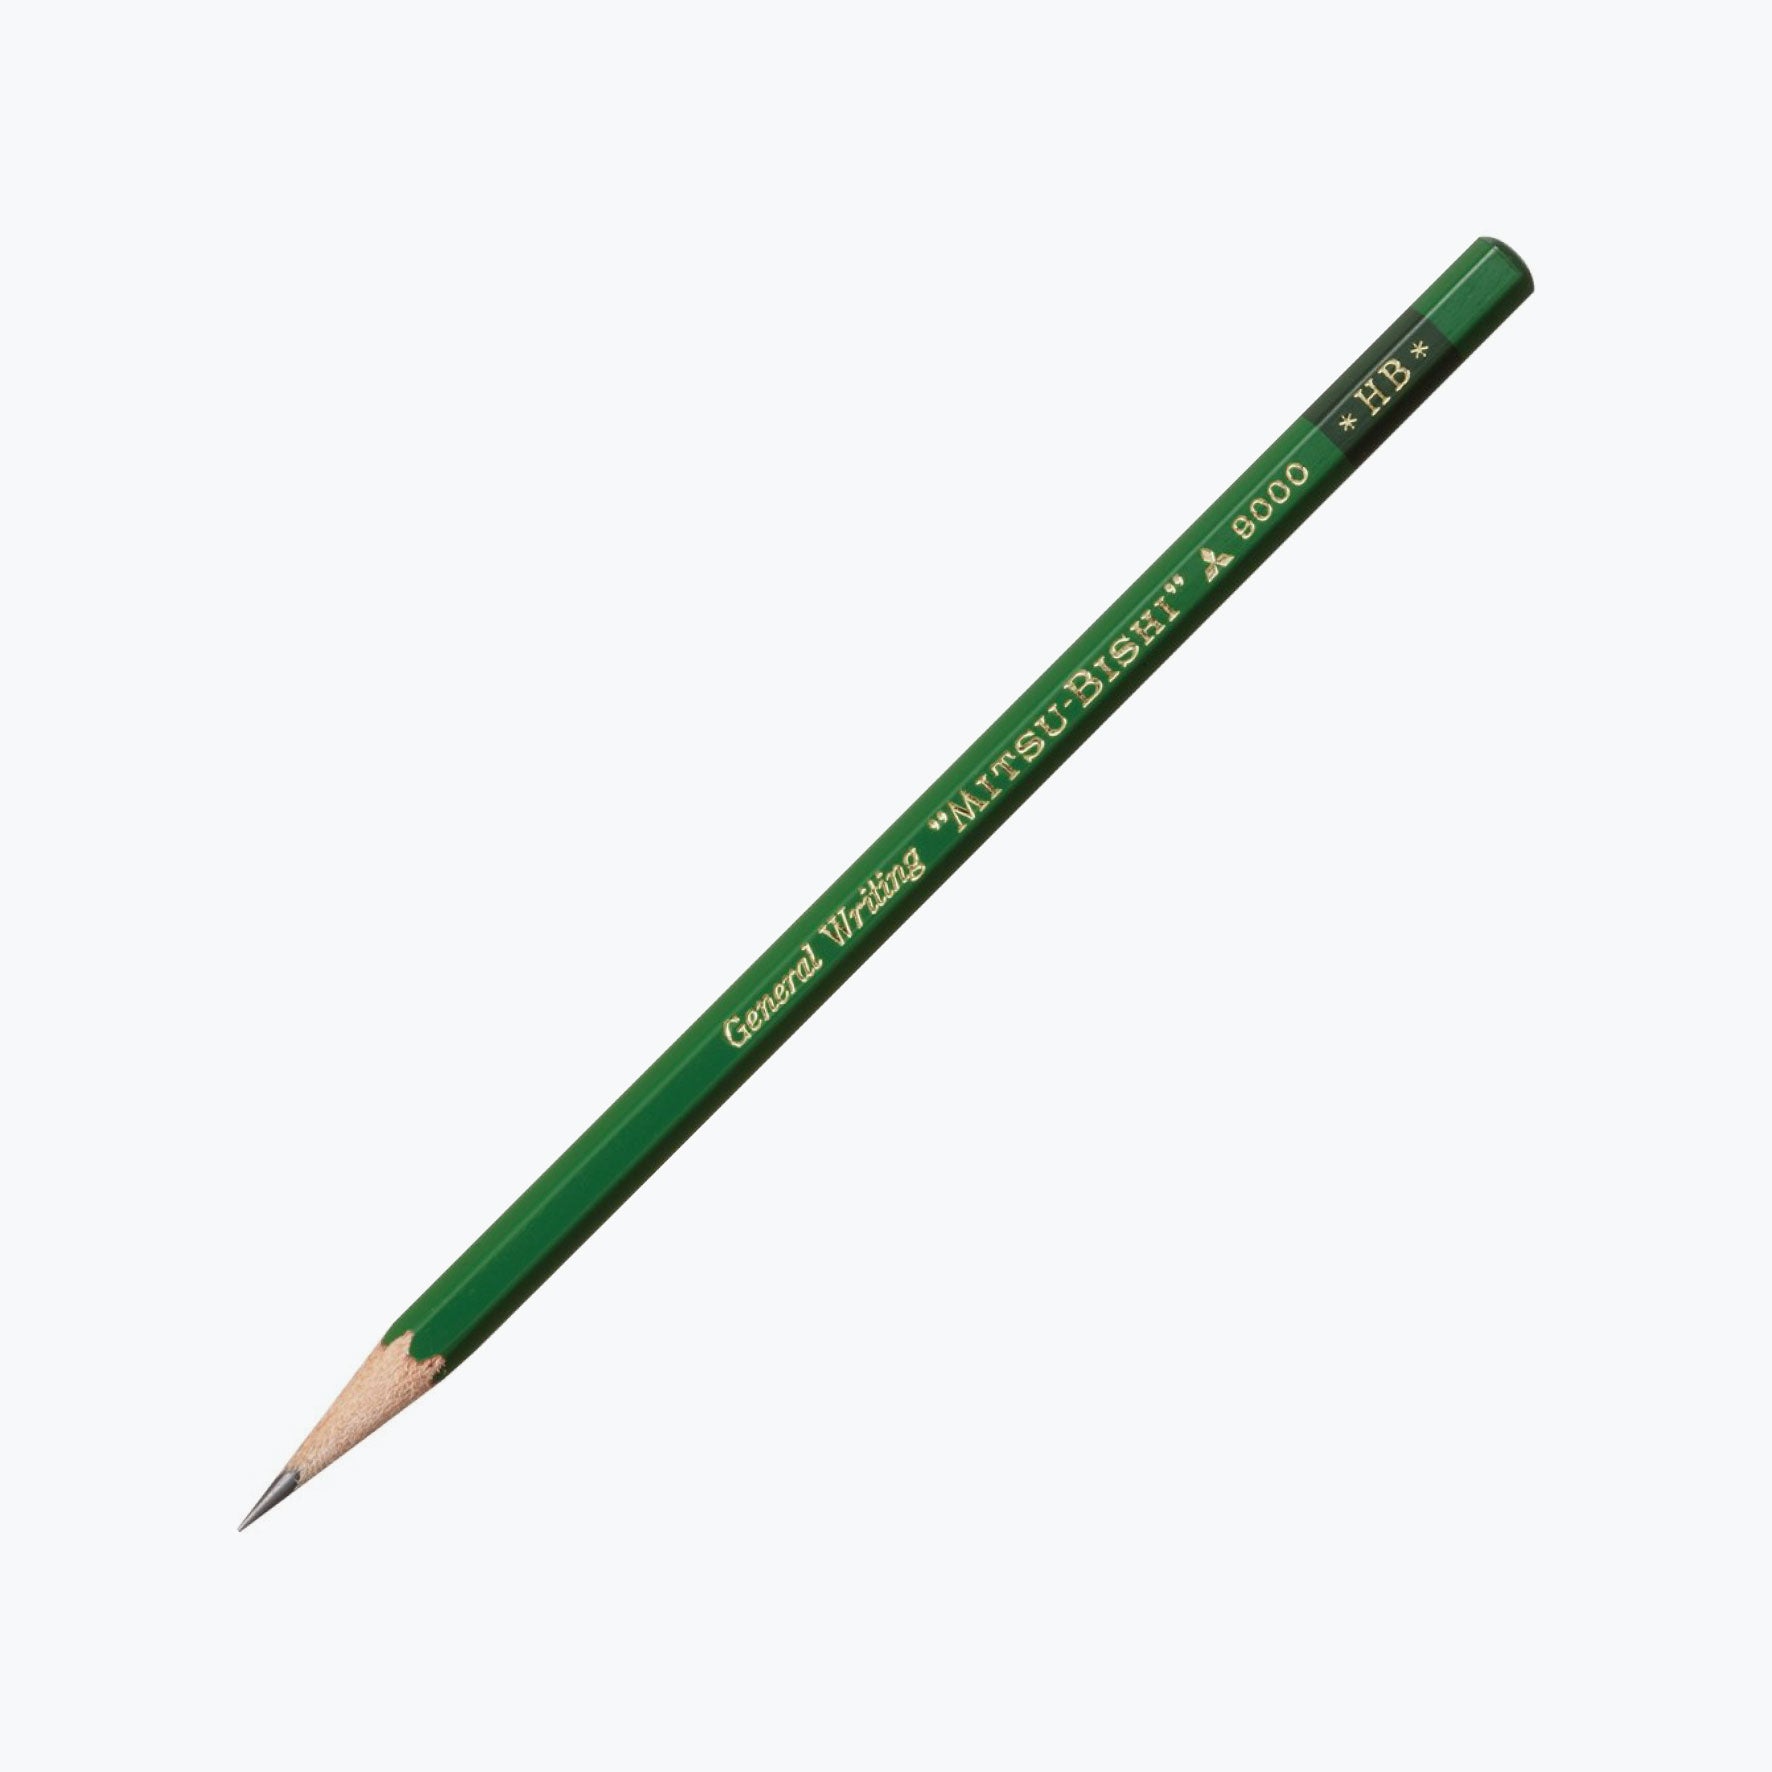 Mitsubishi - Pencil - 9000 (Various Grades) - Pack of 2